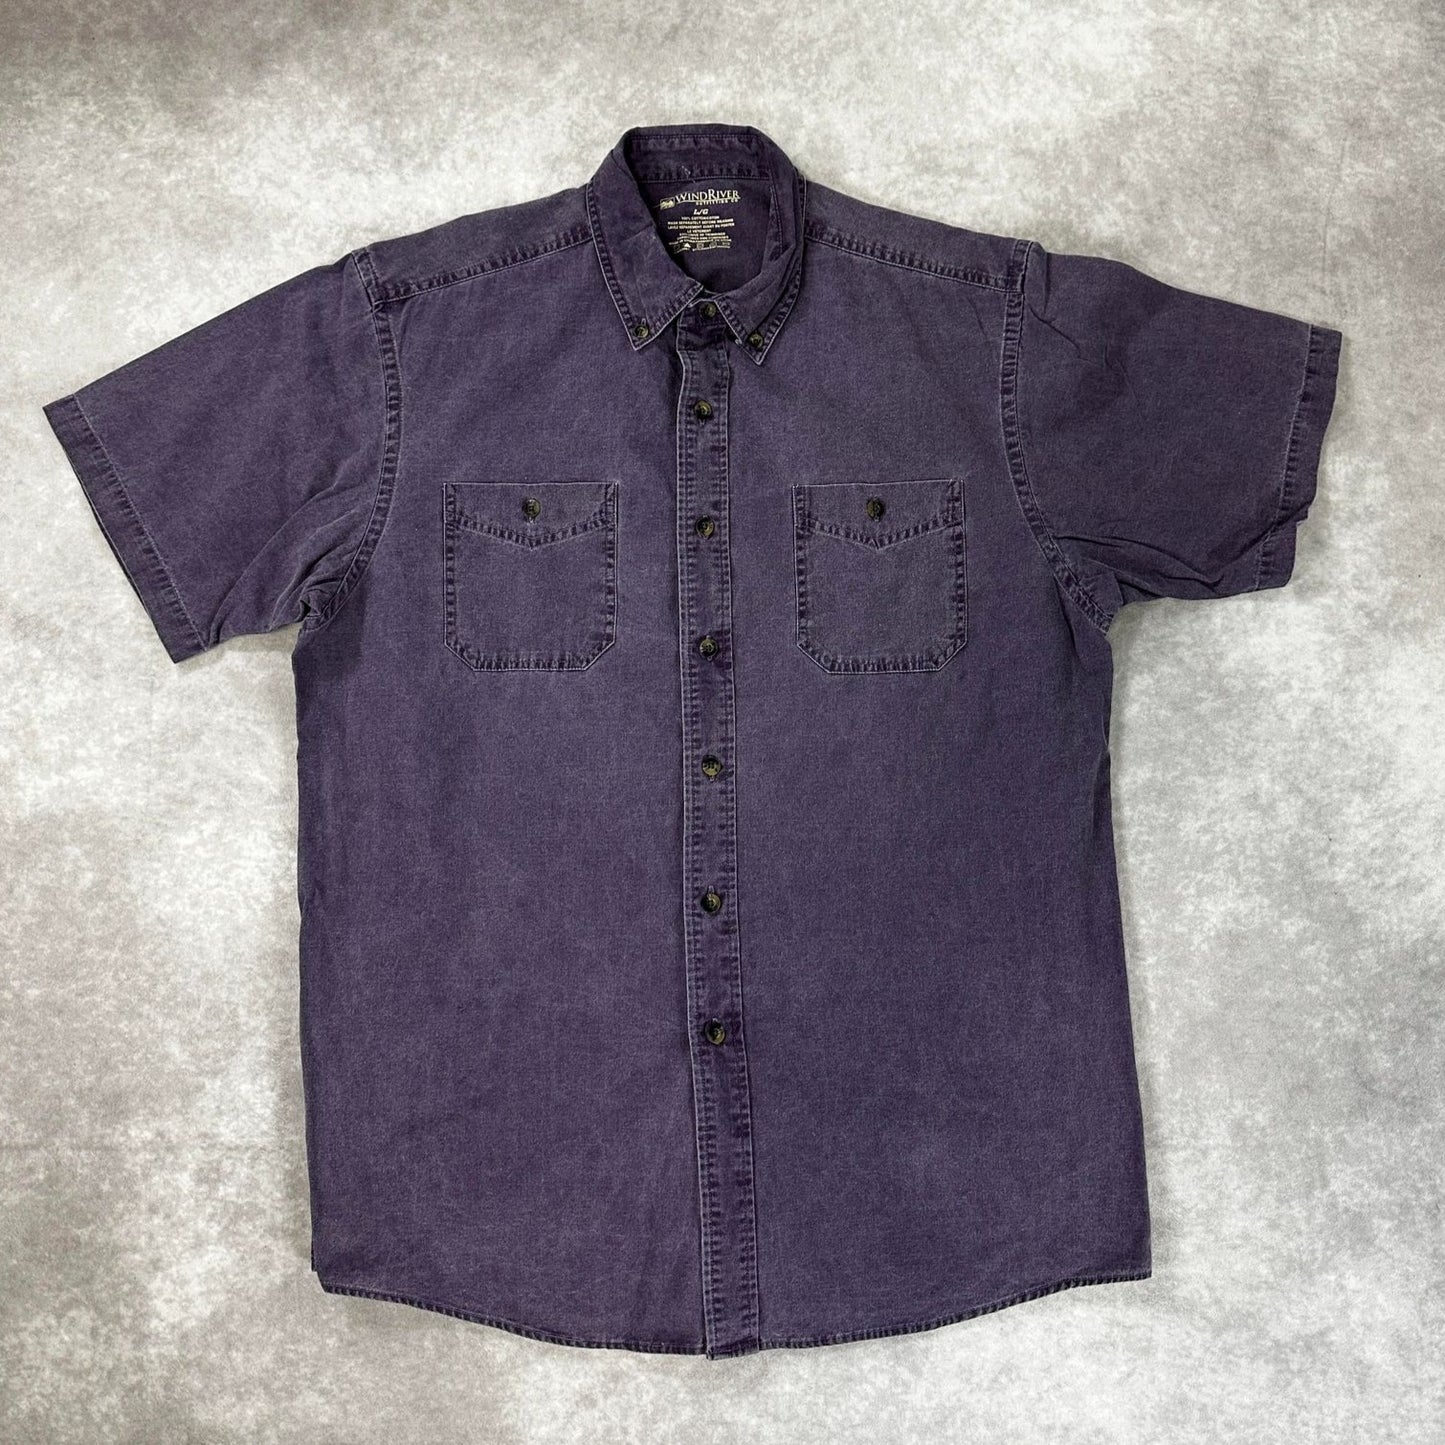 (XXL) Wind River Purple Shirt